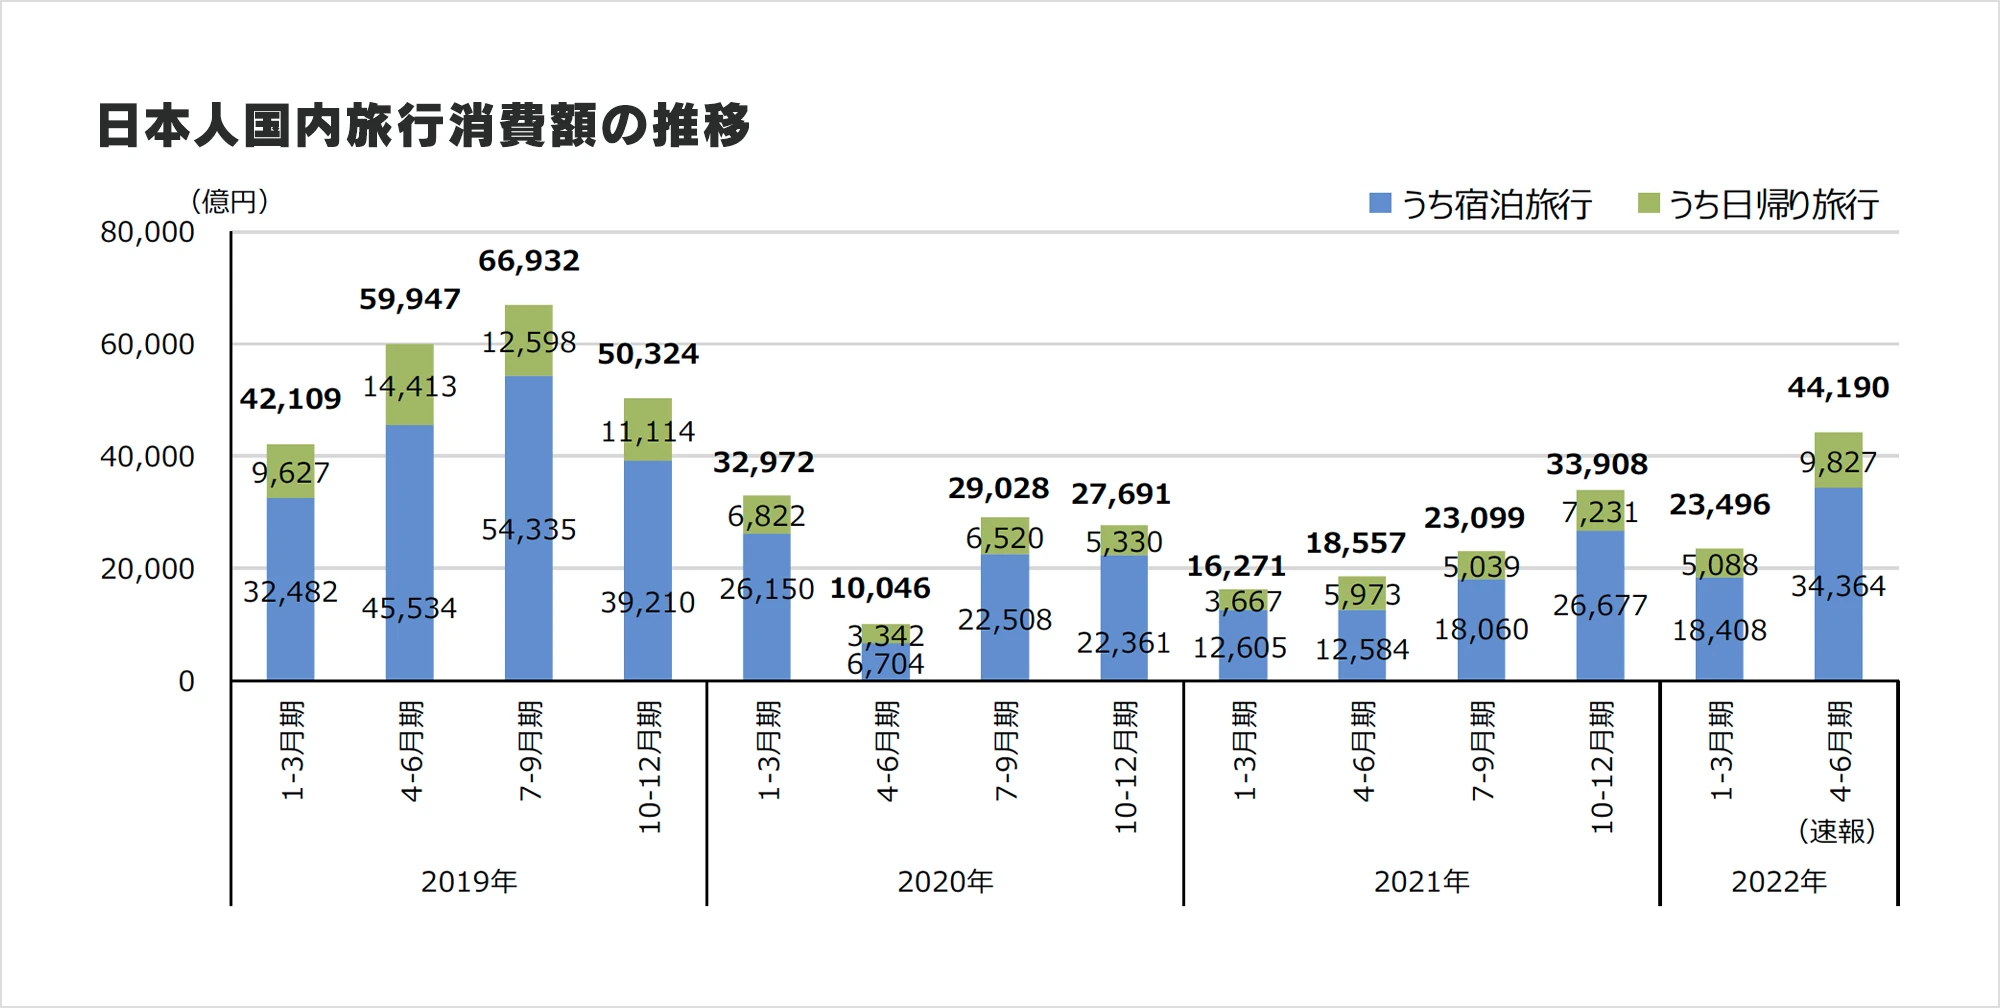 日本国内旅行消費額の推移／出典：観光庁「旅行・観光消費動向調査2022年4-6月期（速報）」